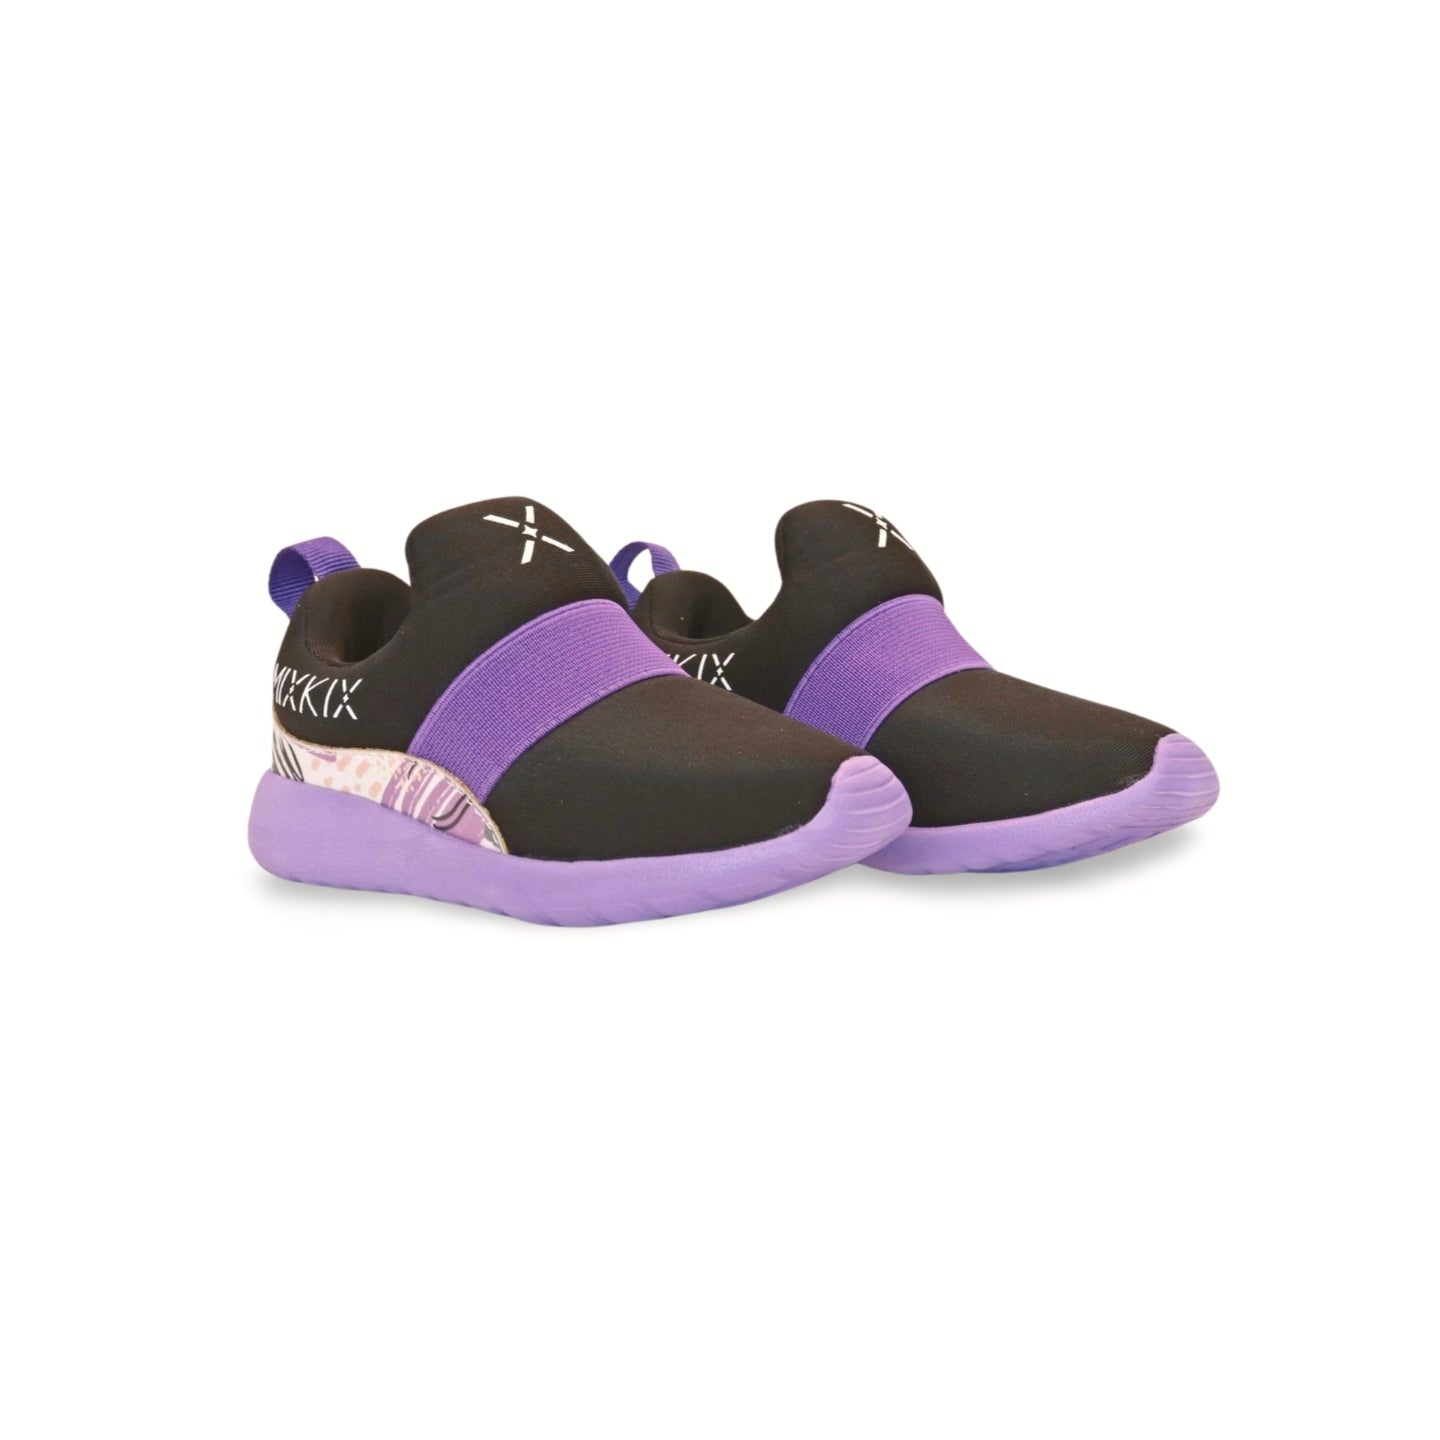 Mix Kix Purple and Black Kids Sneakers – mix-kix